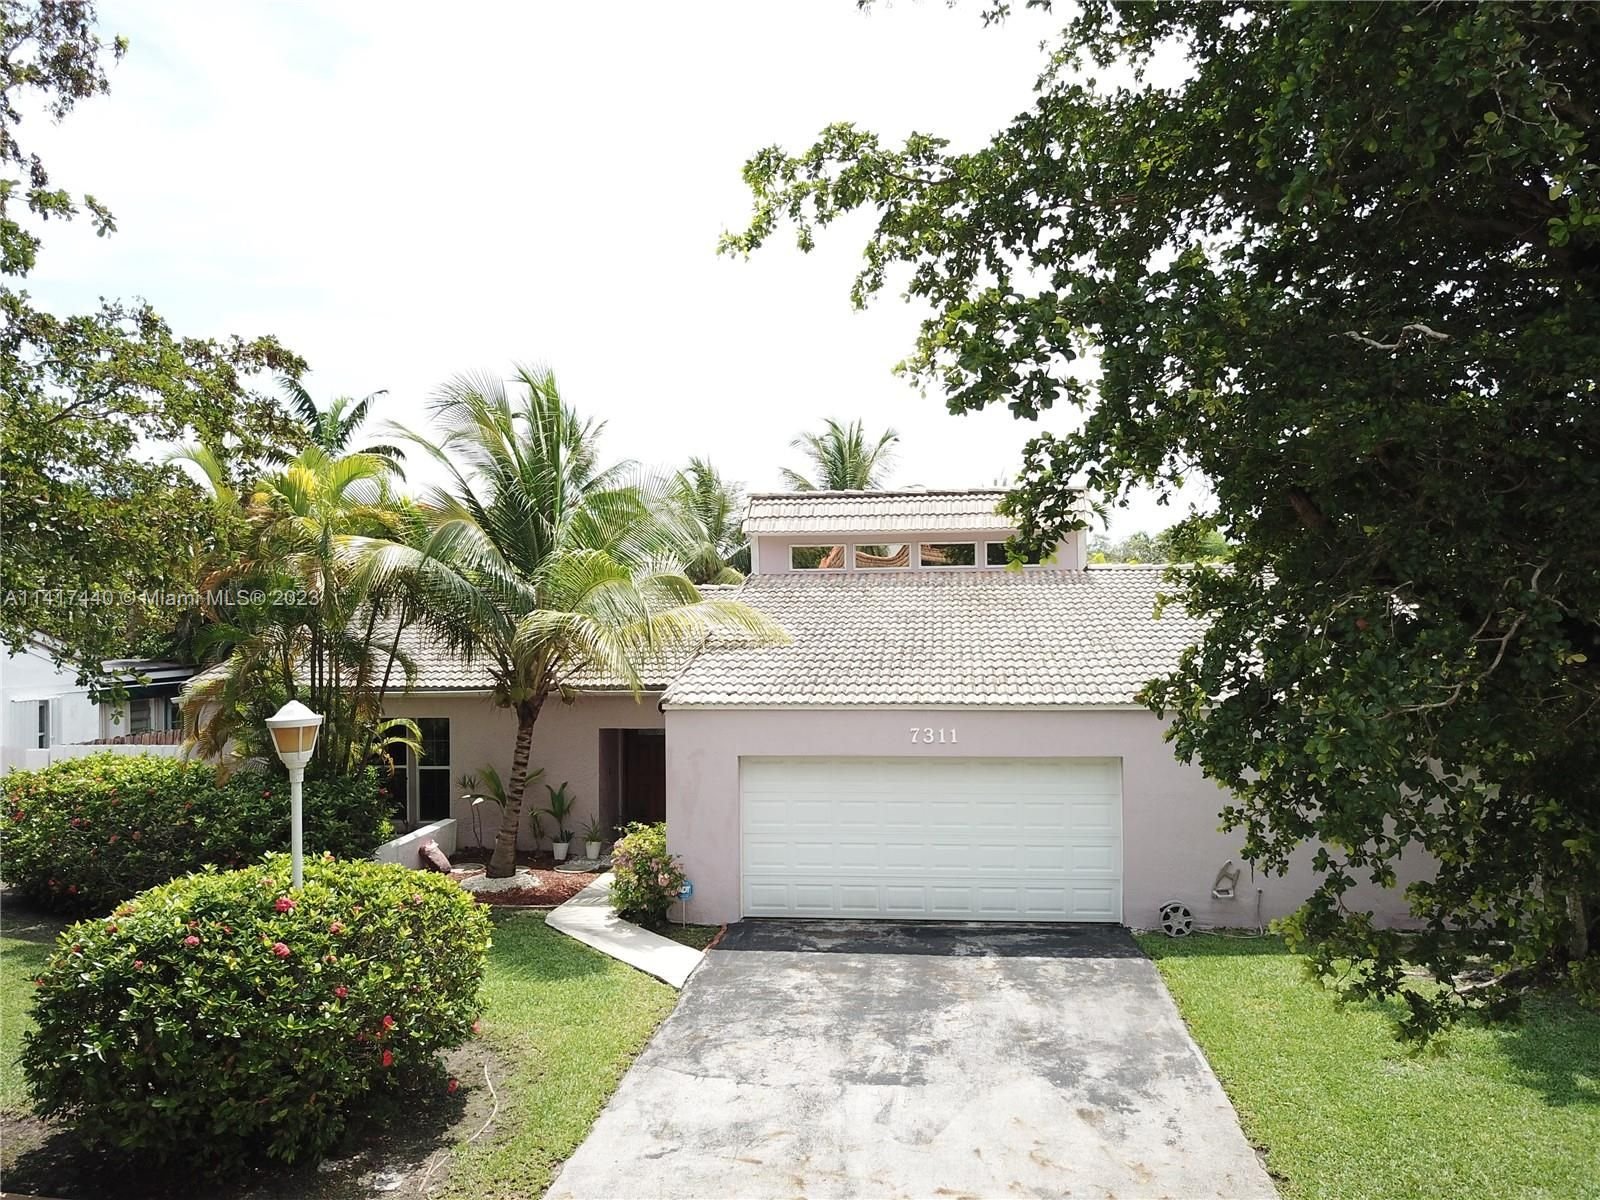 Real estate property located at 7311 100th Ct, Miami-Dade County, MARCO SUB SEC 2, Miami, FL